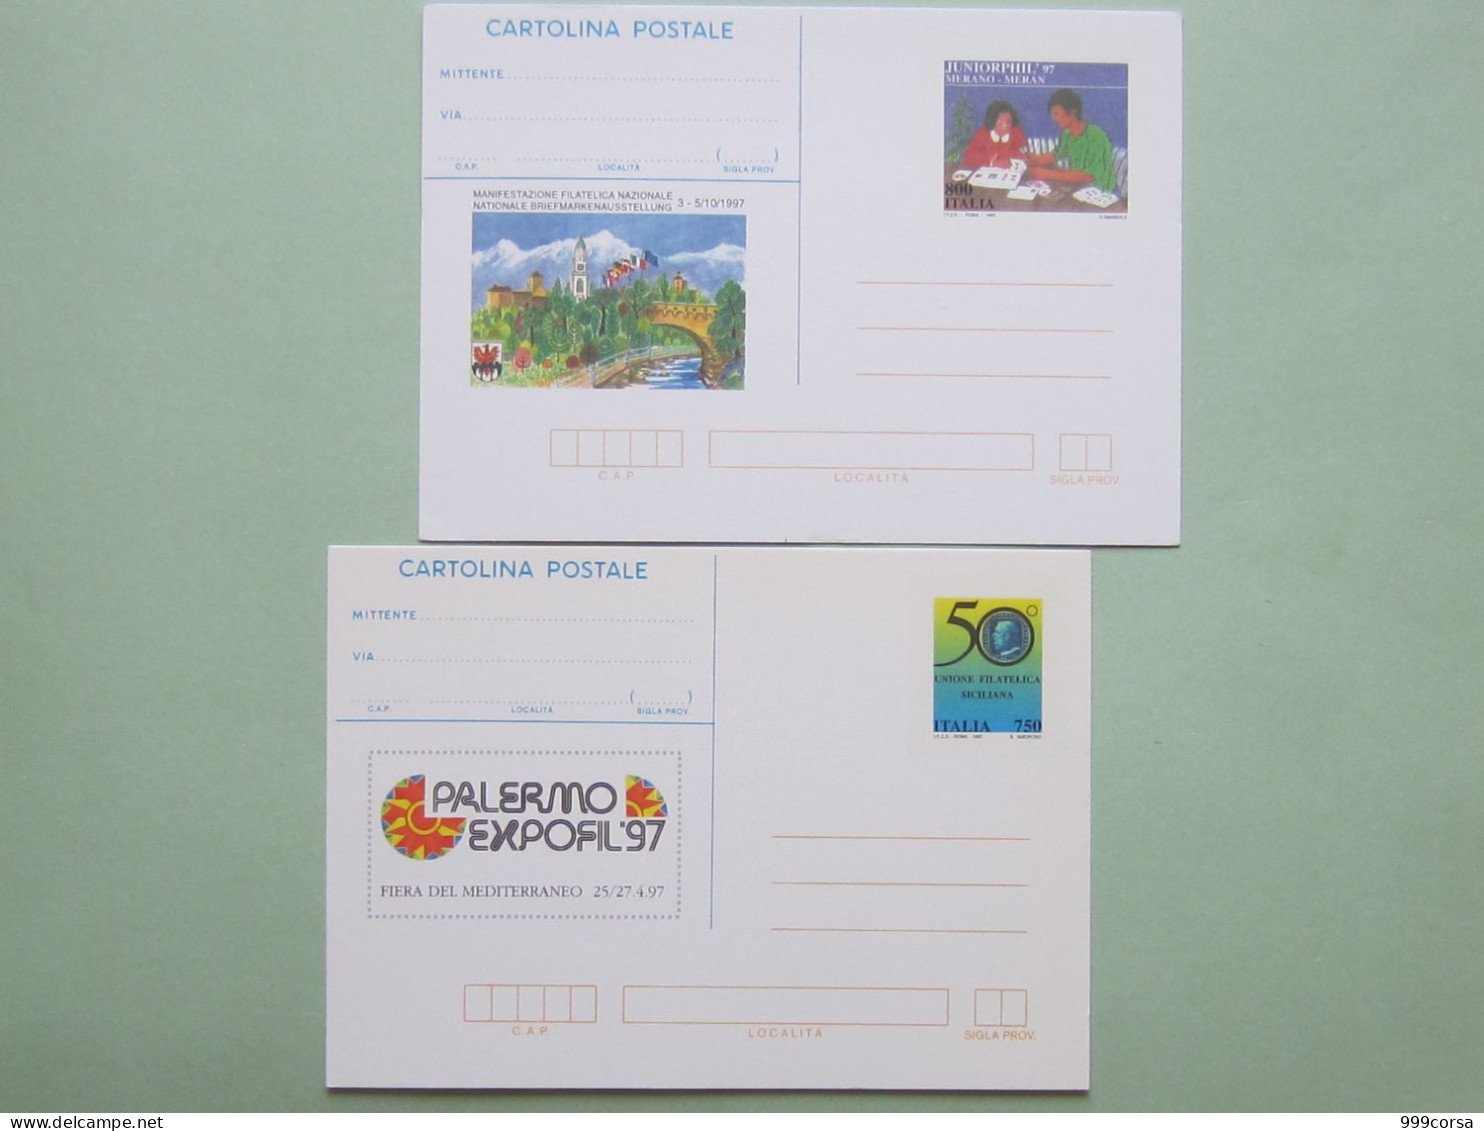 ITALIA 1994-1996-1997, Manifestaz.Filatelica Naz.Verona 94-96, Merano E Palermo 97, 4 Cart. Postali - Ganzsachen